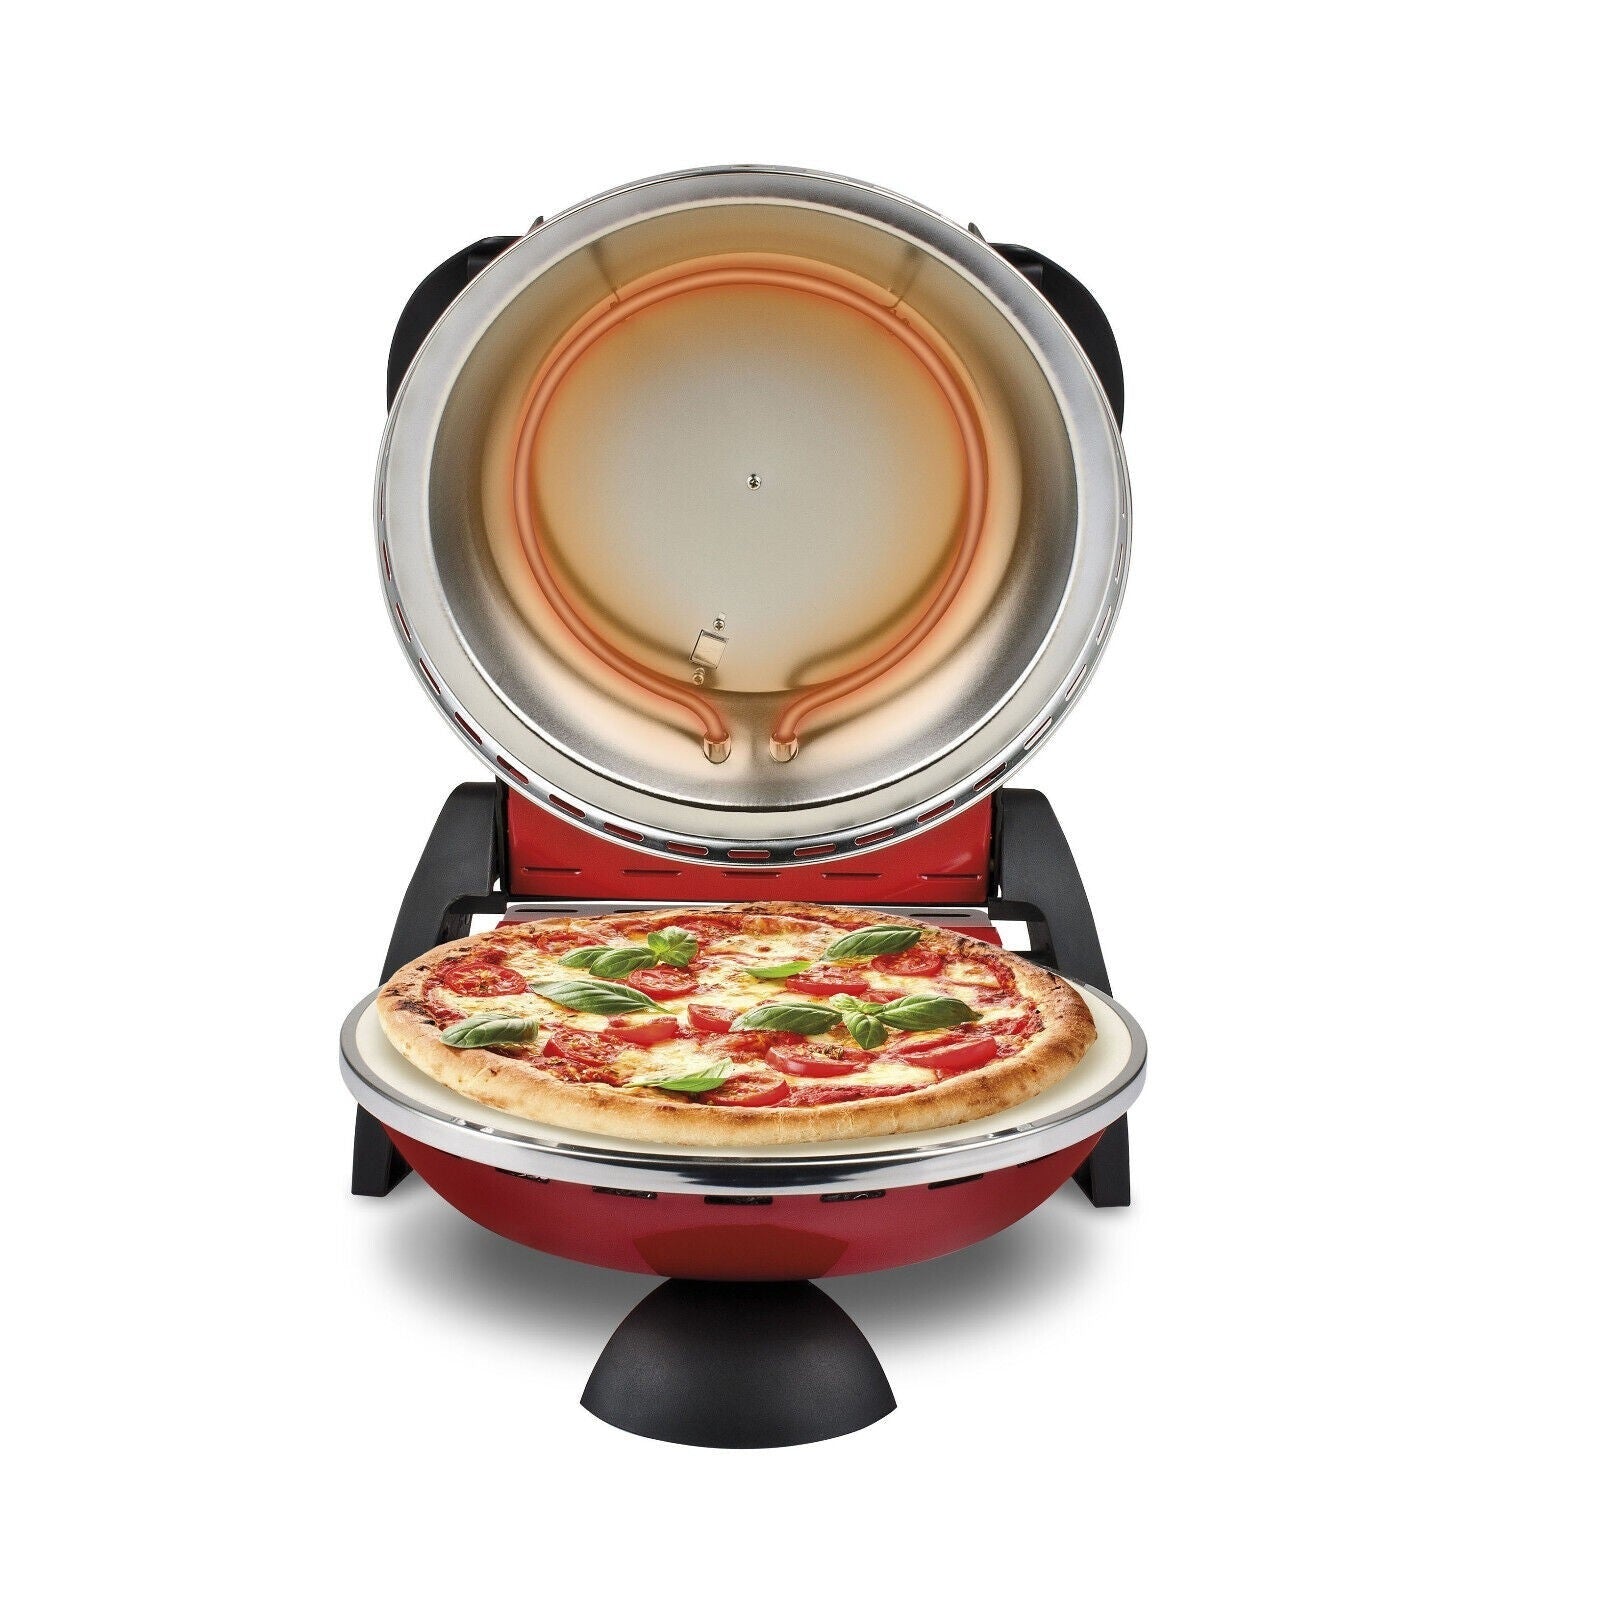 Forno elettrico per pizza in pietra refattaria con temperatura regolabile 5 livelli di cottura